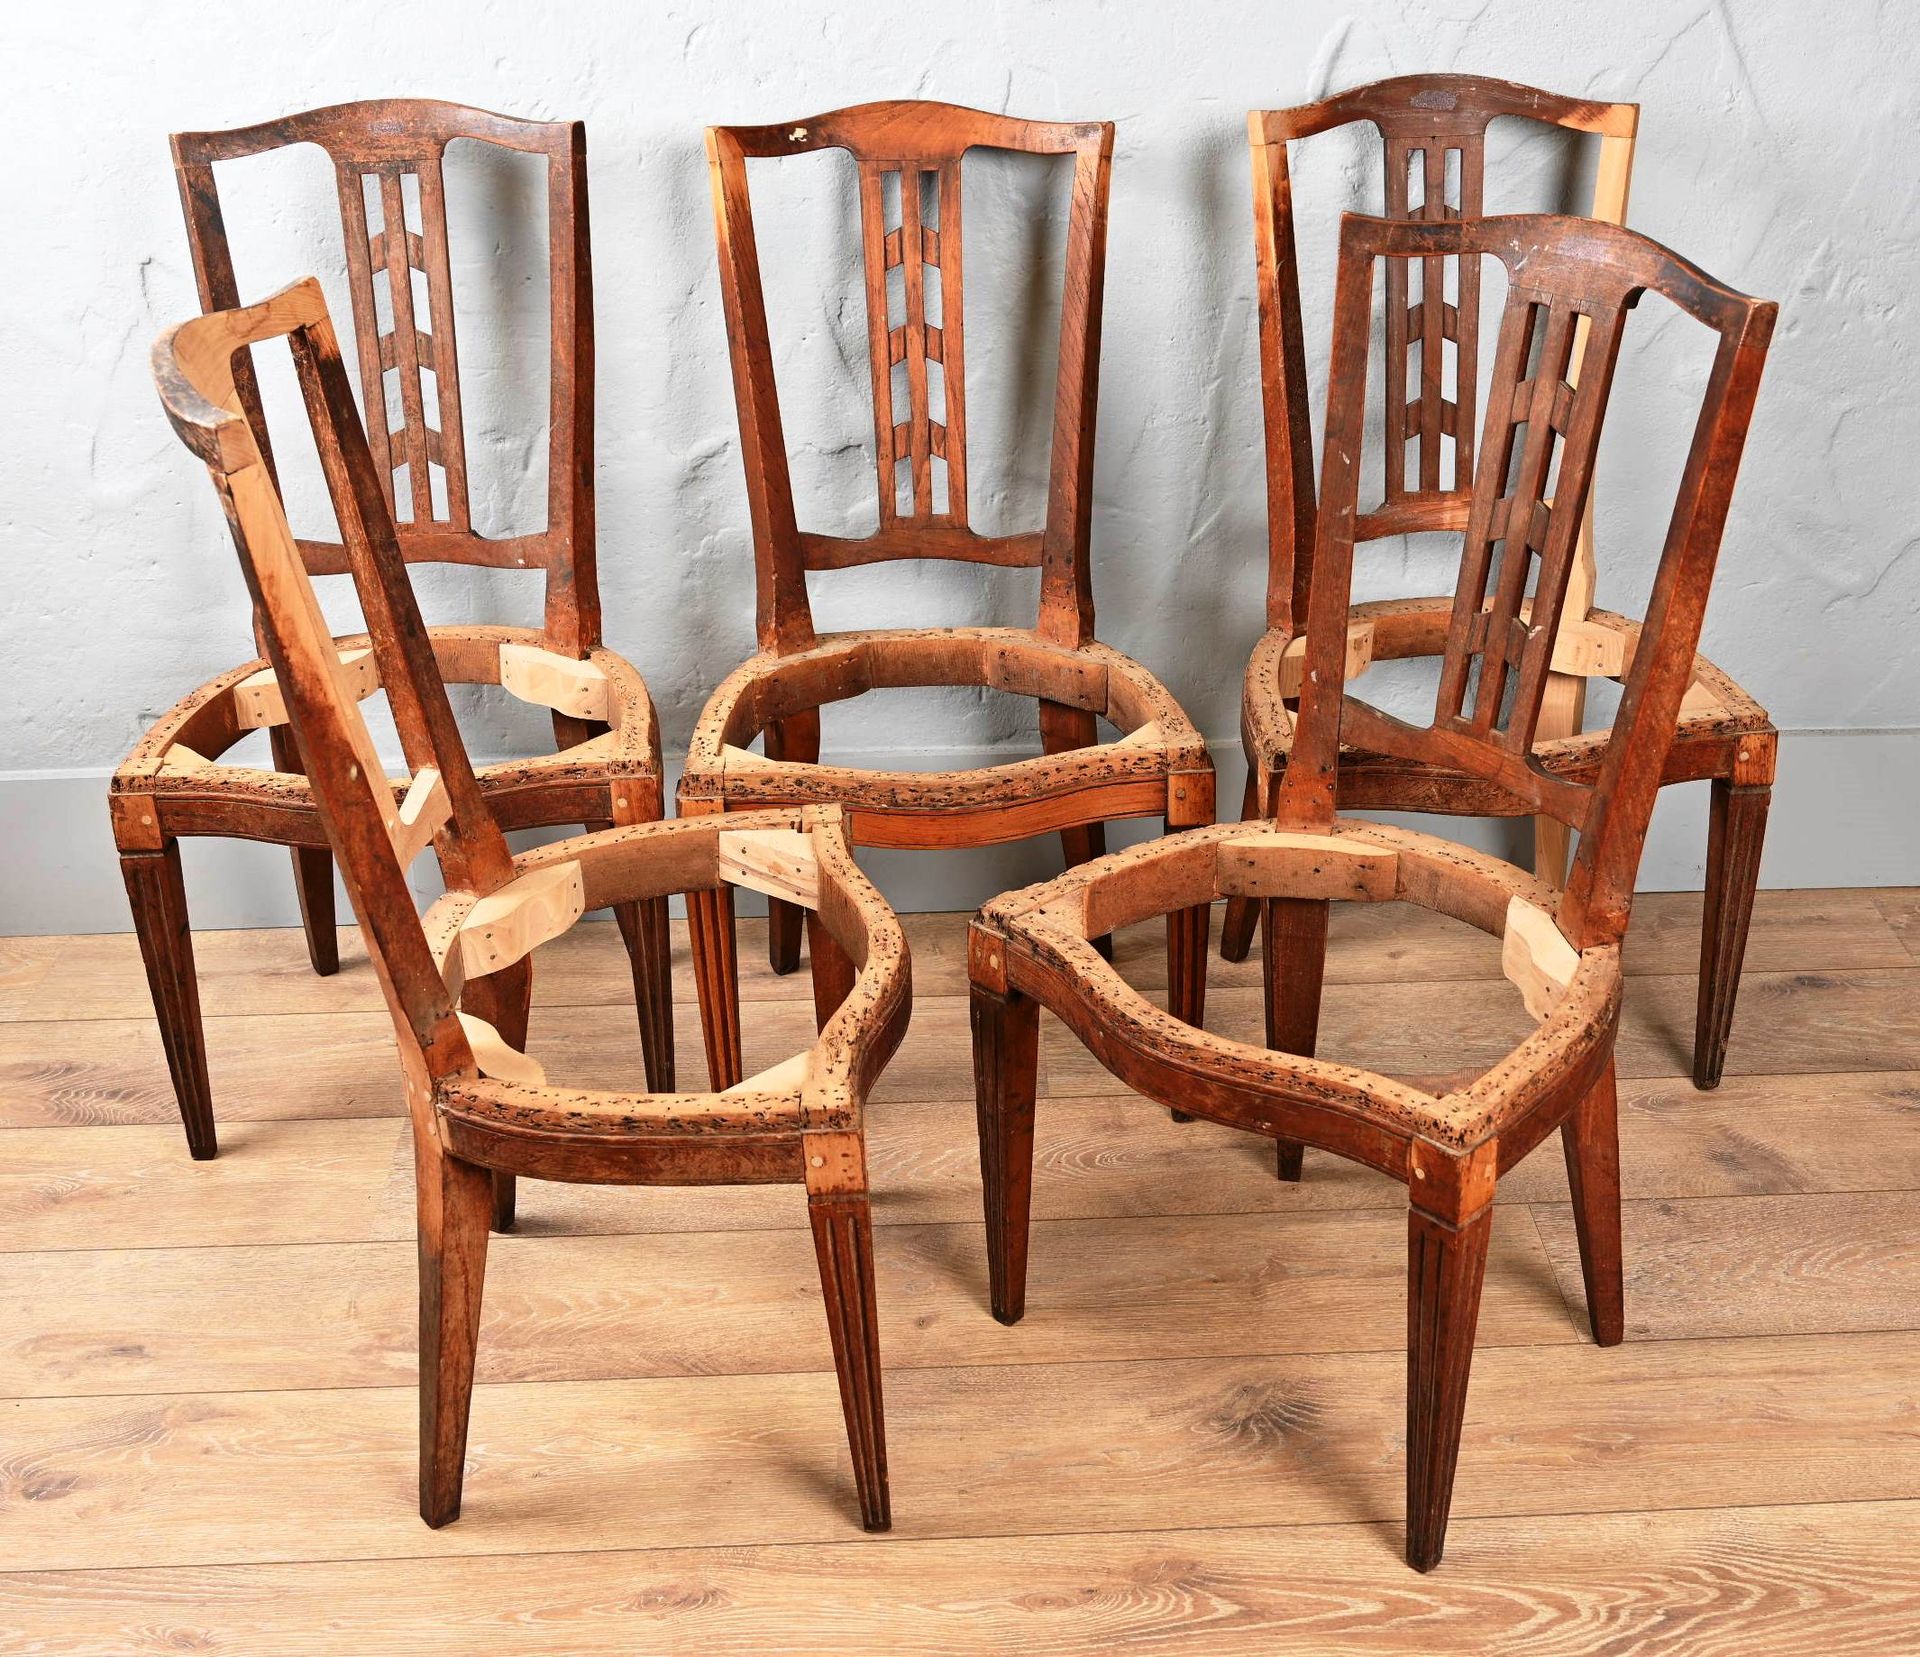 Suite de 5 chaises de style Louis XVI. Suite aus 5 Stühlen im Stil Louis XVI.

T&hellip;